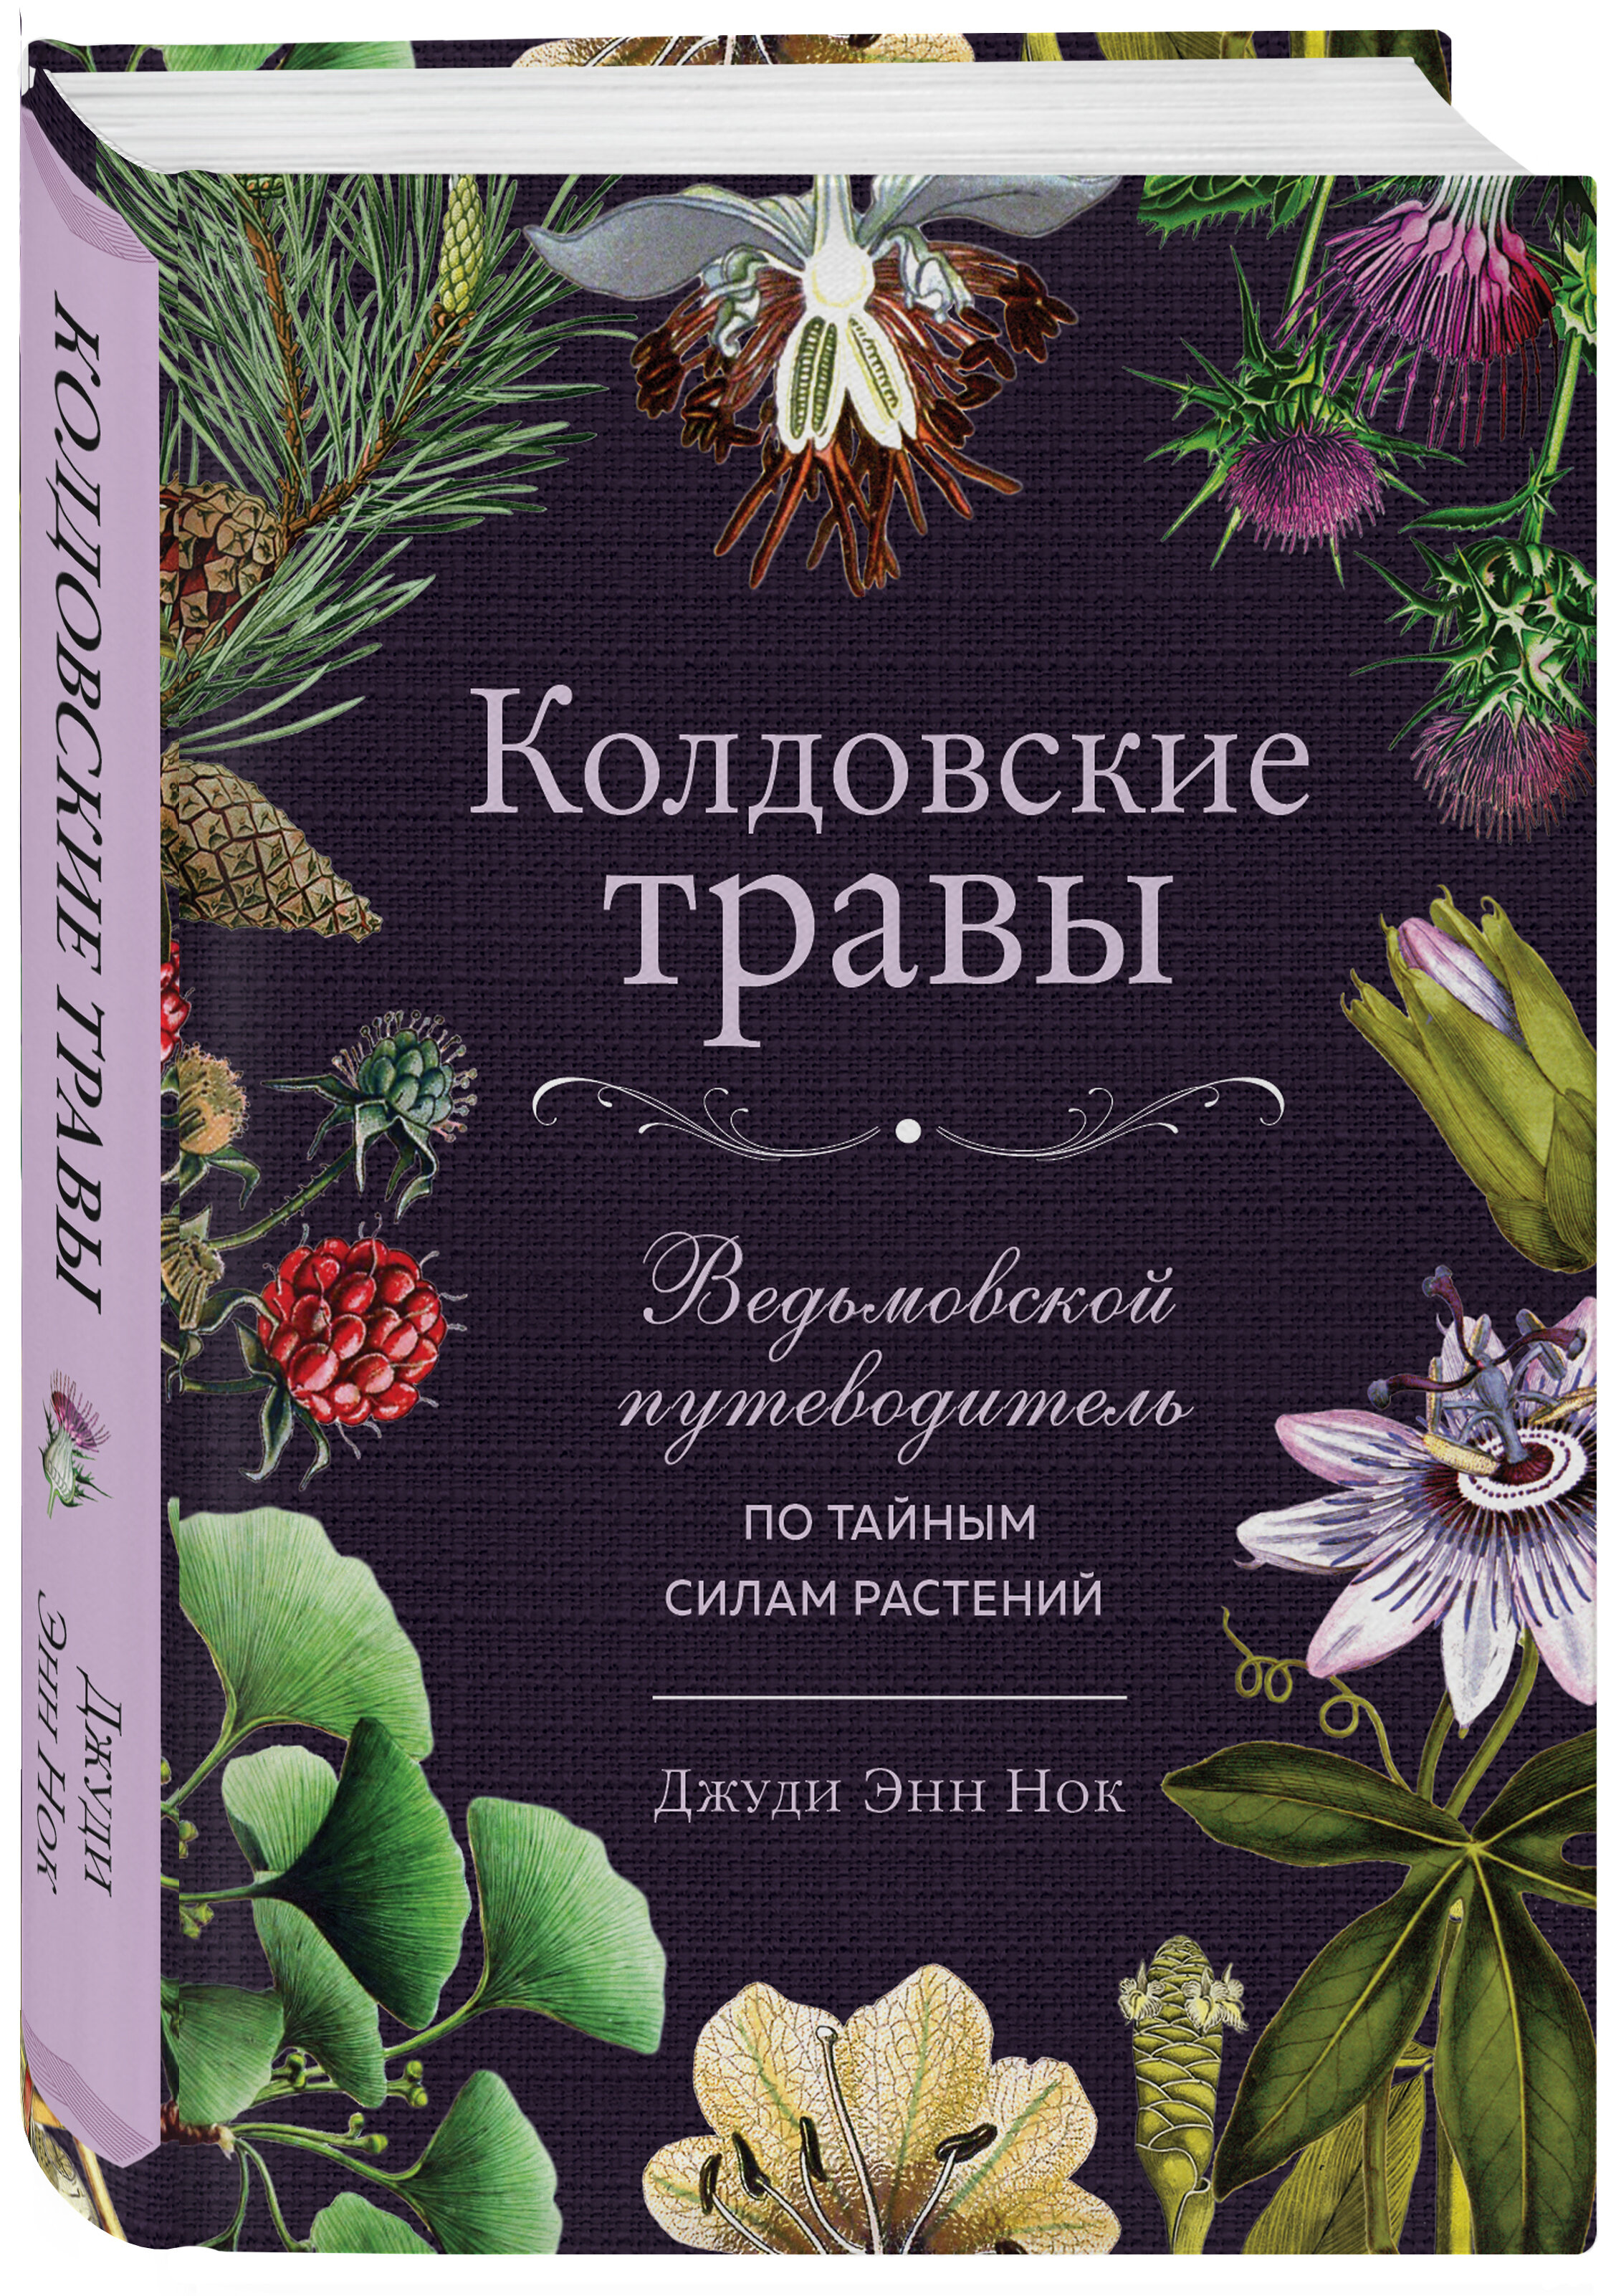 Колдовские травы: Ведьмовской путеводитель по тайным силам растений